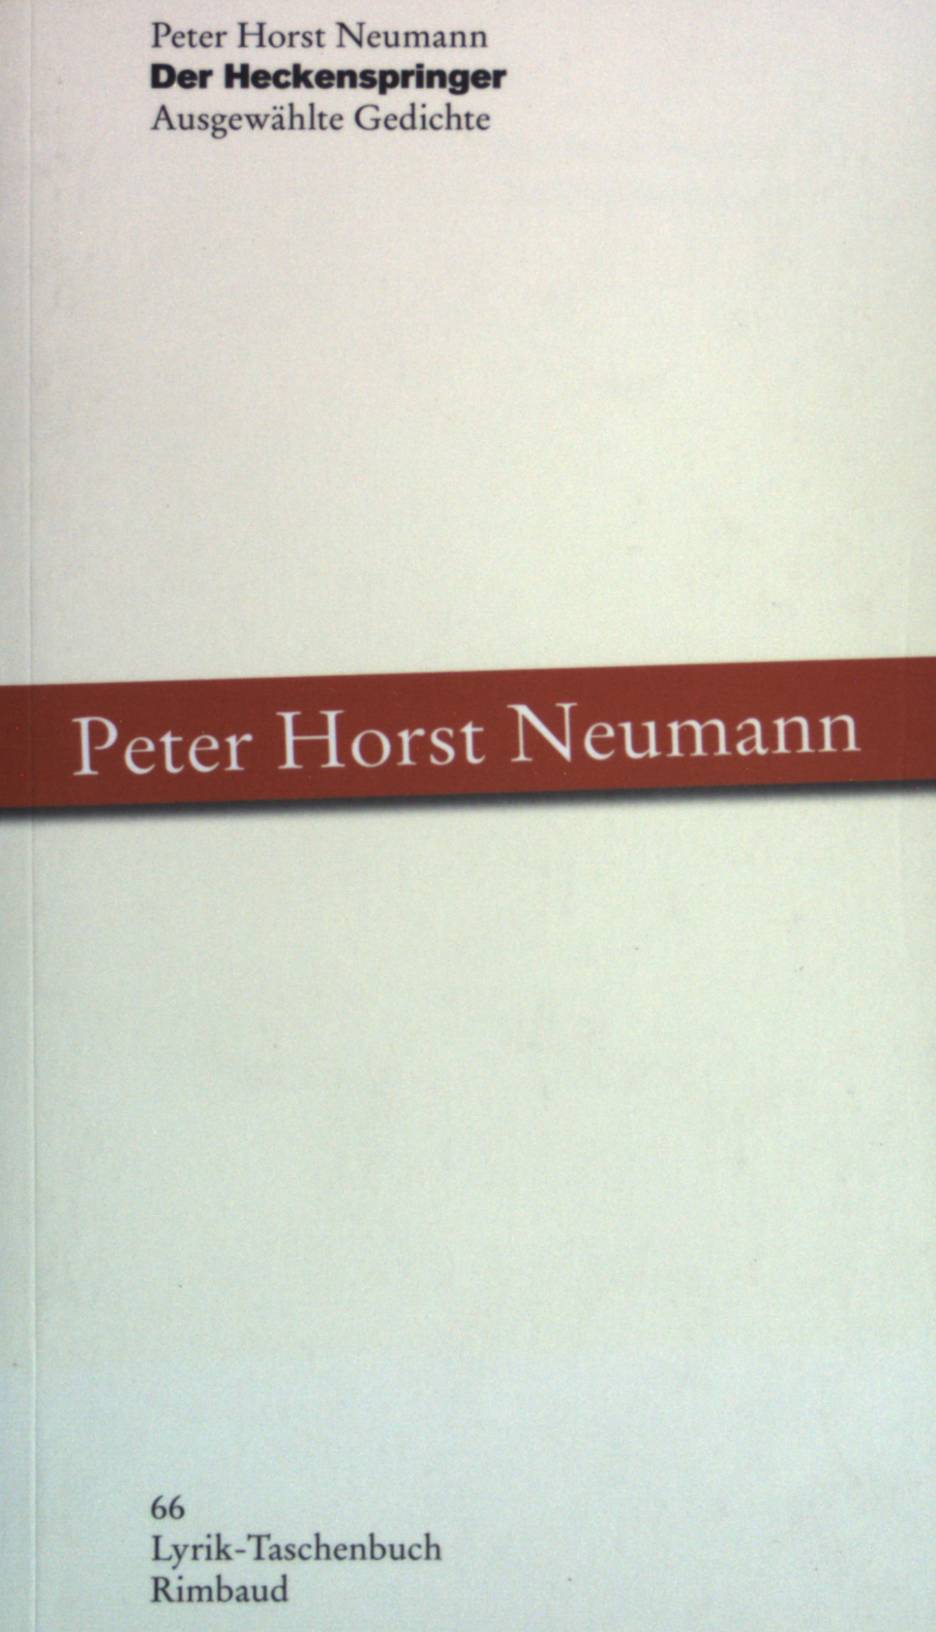 Der Heckenspringer : ausgewählte Gedichte. Lyrik-Taschenbuch ; (Nr. 66) - Neumann, Peter Horst und Jürgen (Mitwirkender) Kostka